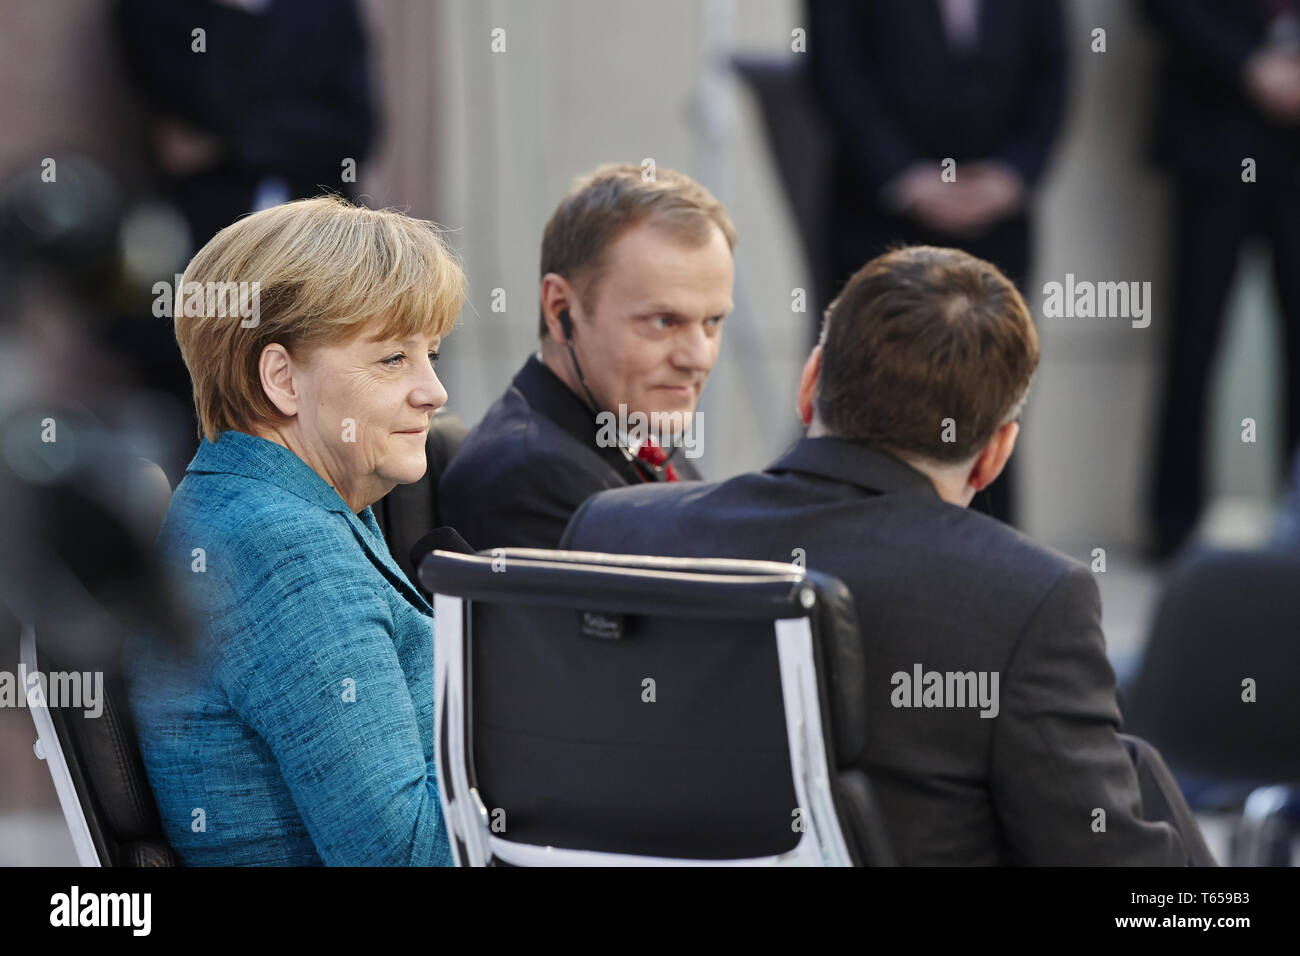 Portrait d'Angela Merkel, la chancelière allemande en 2014 Banque D'Images